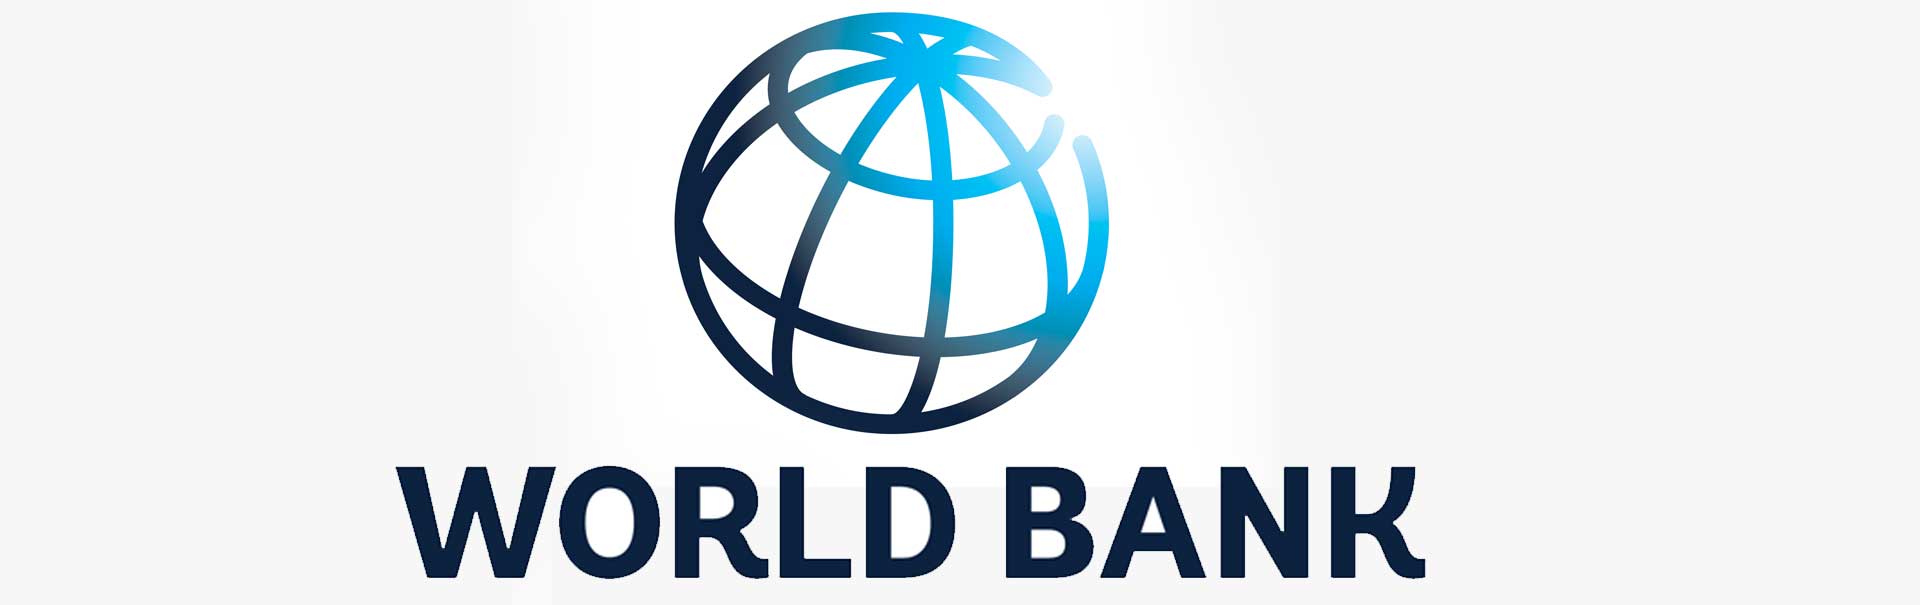 १० वर्षमा थप ४० लाख नेपालीले पाए रोजगारी : विश्व बैंक